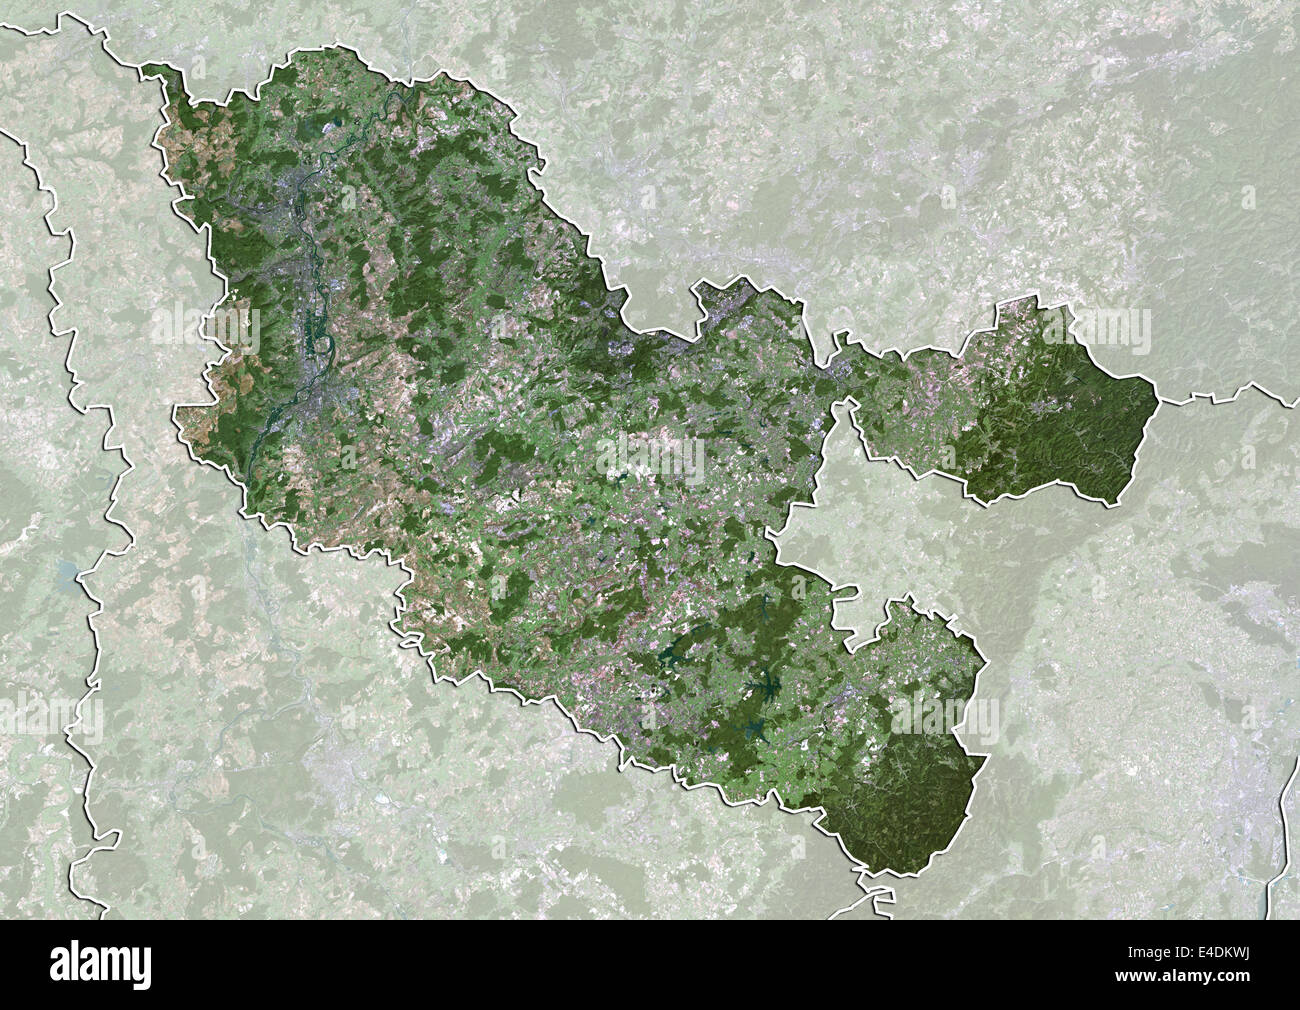 Departement Moselle, Frankreich, Echtfarben-Satellitenbild Stockfoto